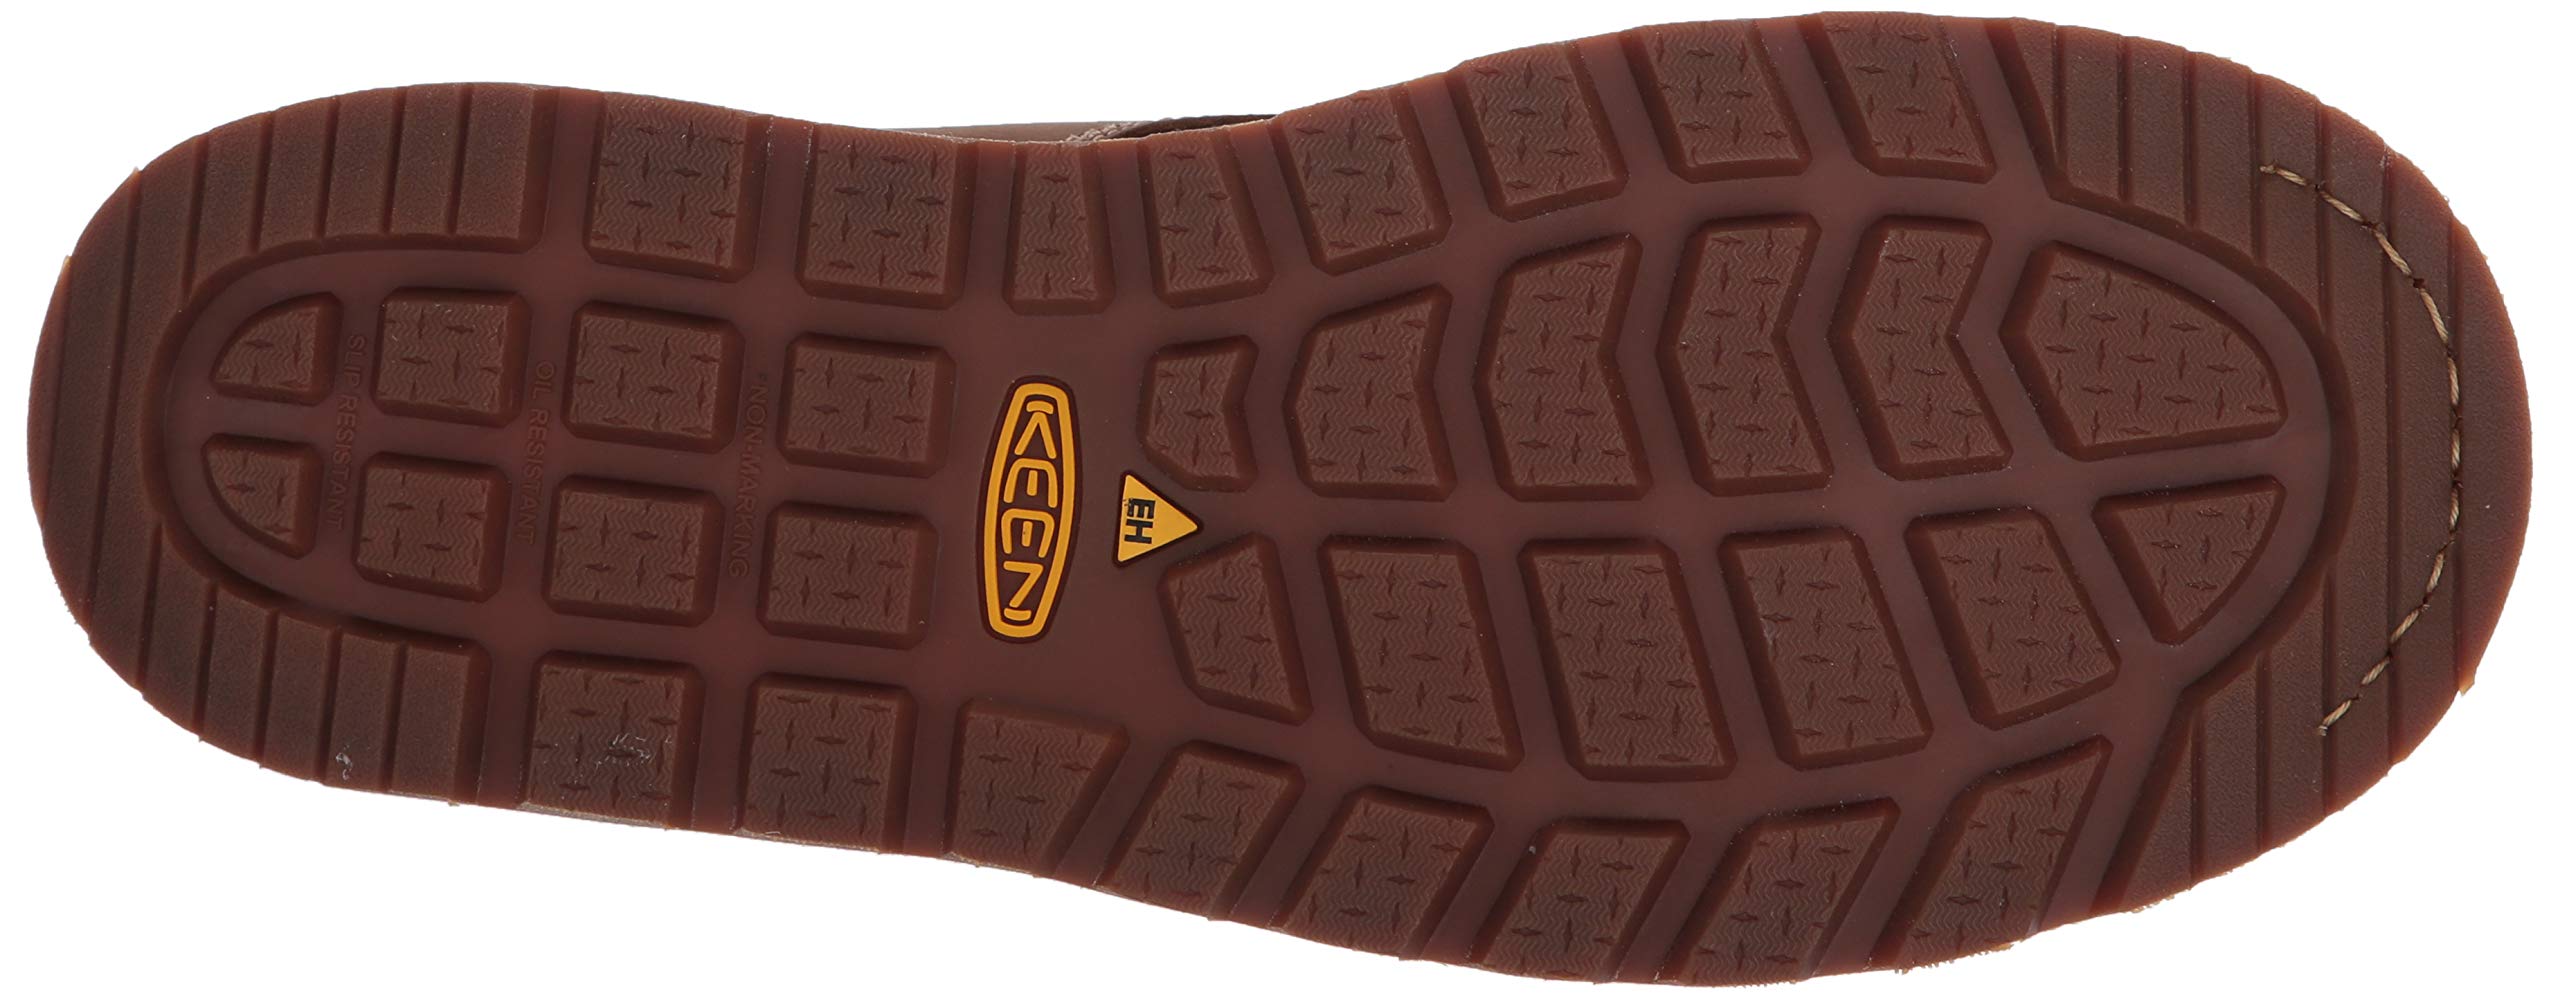 KEEN Utility Men's Cincinnati 6” Composite Toe Waterproof Wedge Work Boots